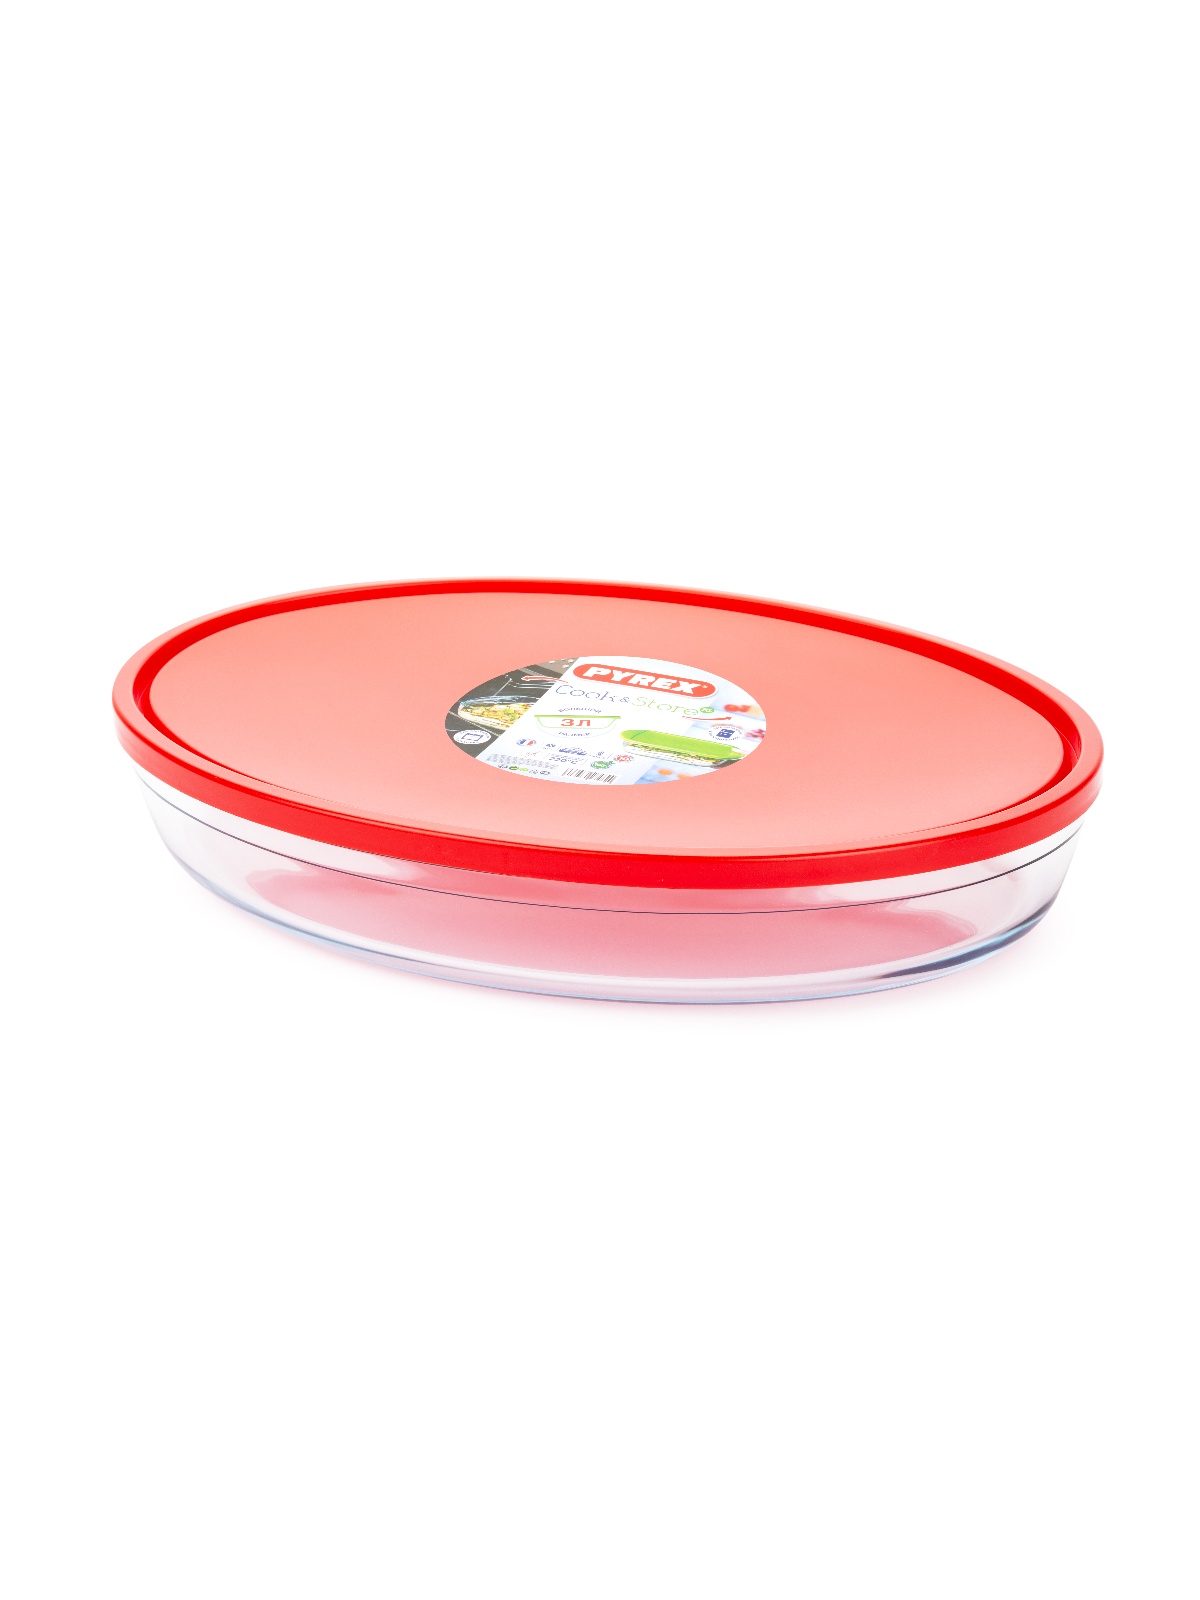 форма для запекания pyrex cook Форма для запекания и выпечки с крышкой COOK&STORE XL красная 3л 35х24х6см овальная PYREX 346BN00R